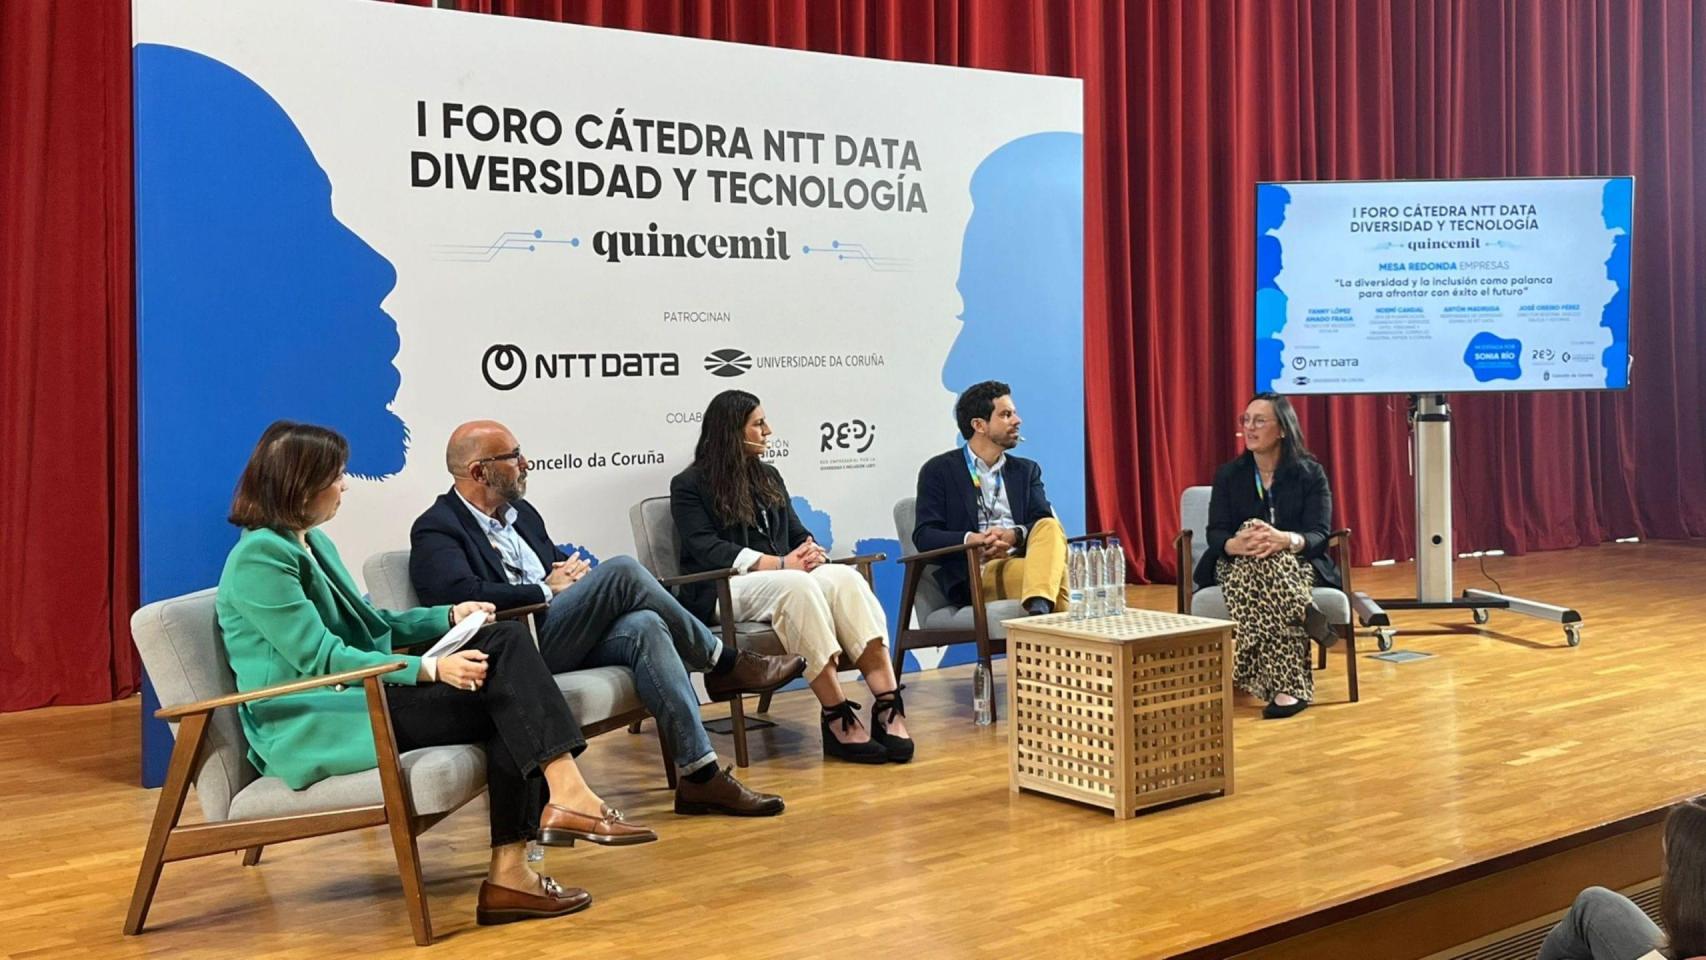 Claves del futuro empresarial de Galicia: Equipos tribu, opiniones diversas o liderazgo inclusivo